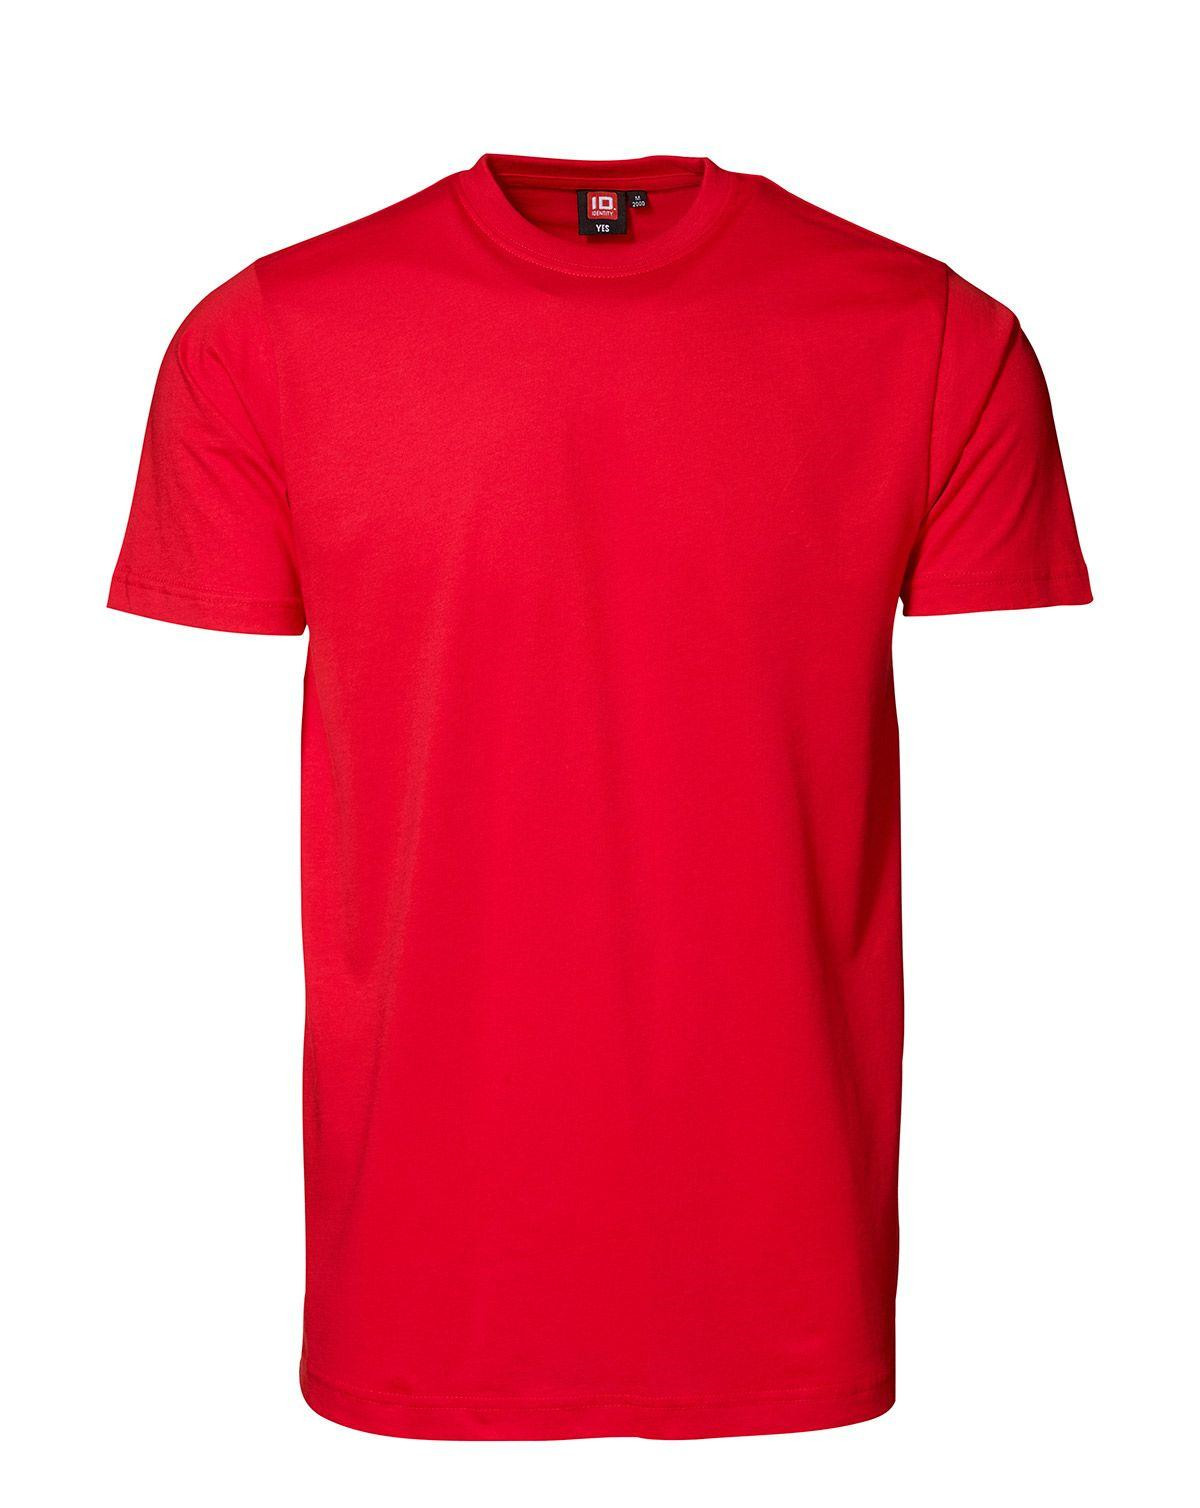 ID YES T-shirt (Rød, XL)